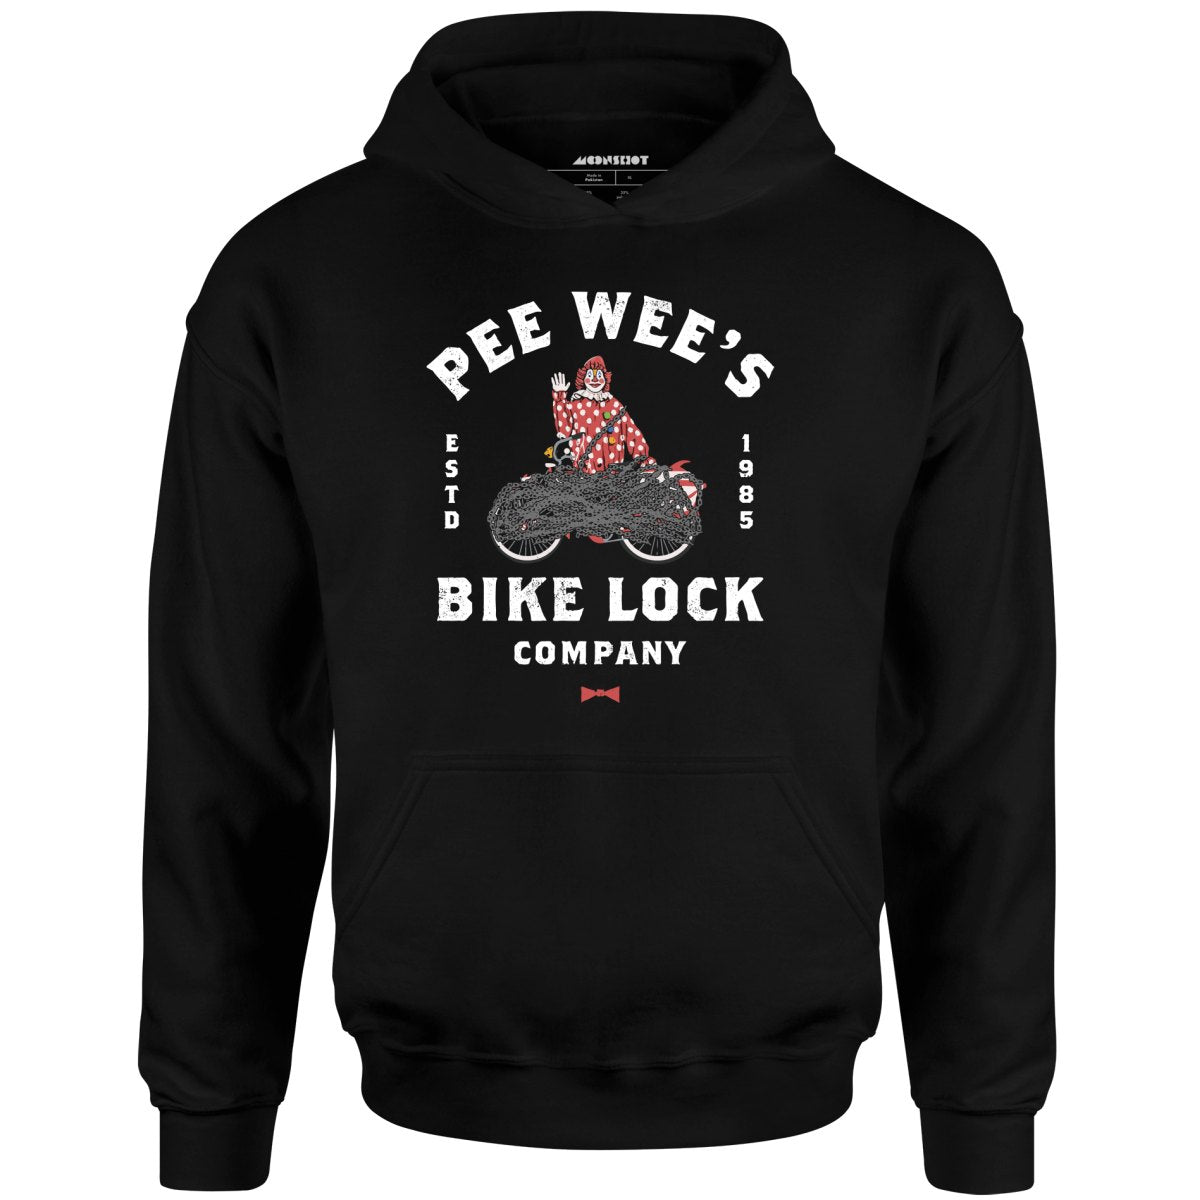 Pee Wee's Bike Lock Company - Unisex Hoodie